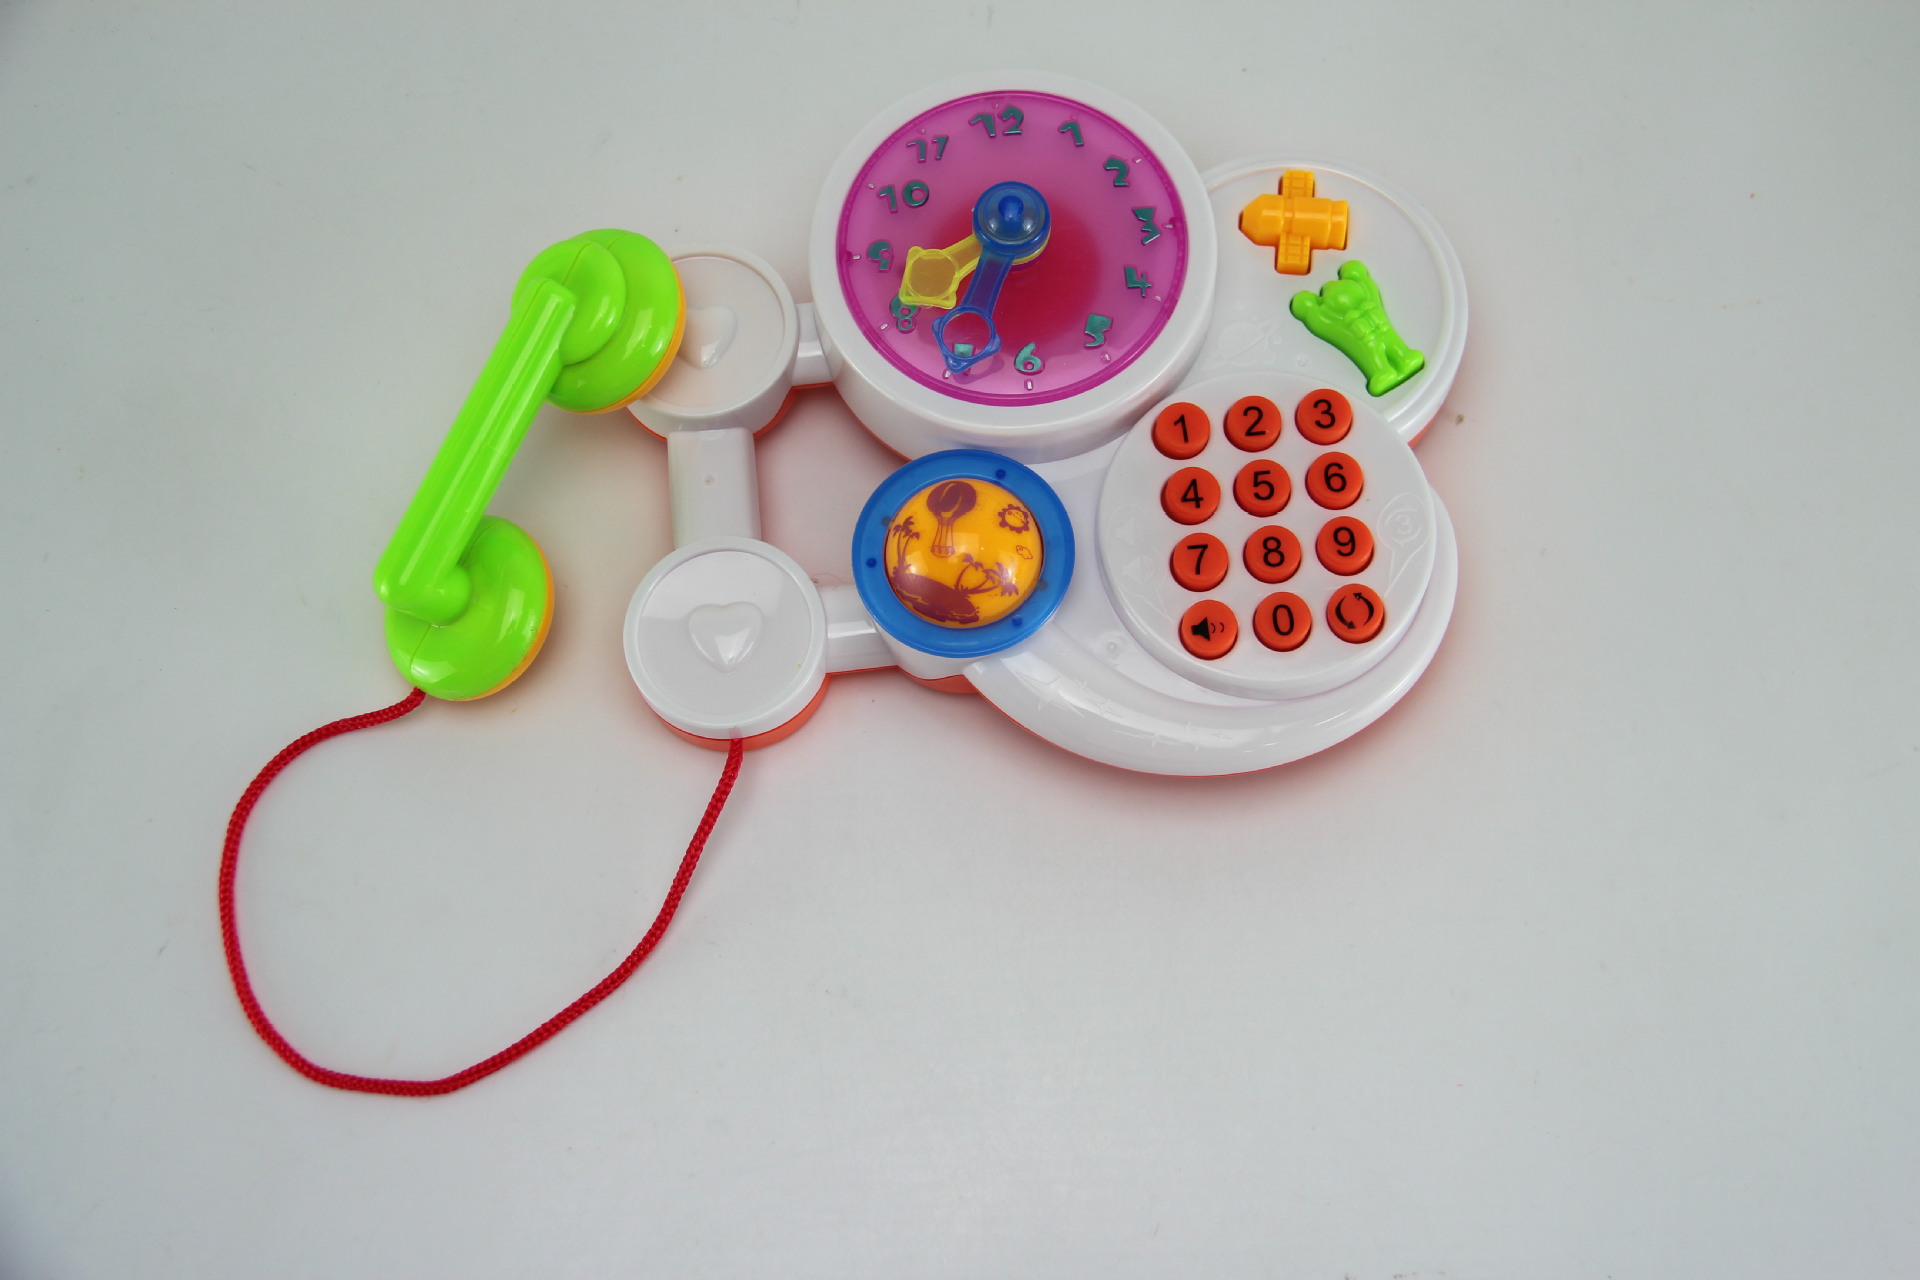 供应星空电话机音乐灯光益智玩具电话玩具早教玩具创乐婴童